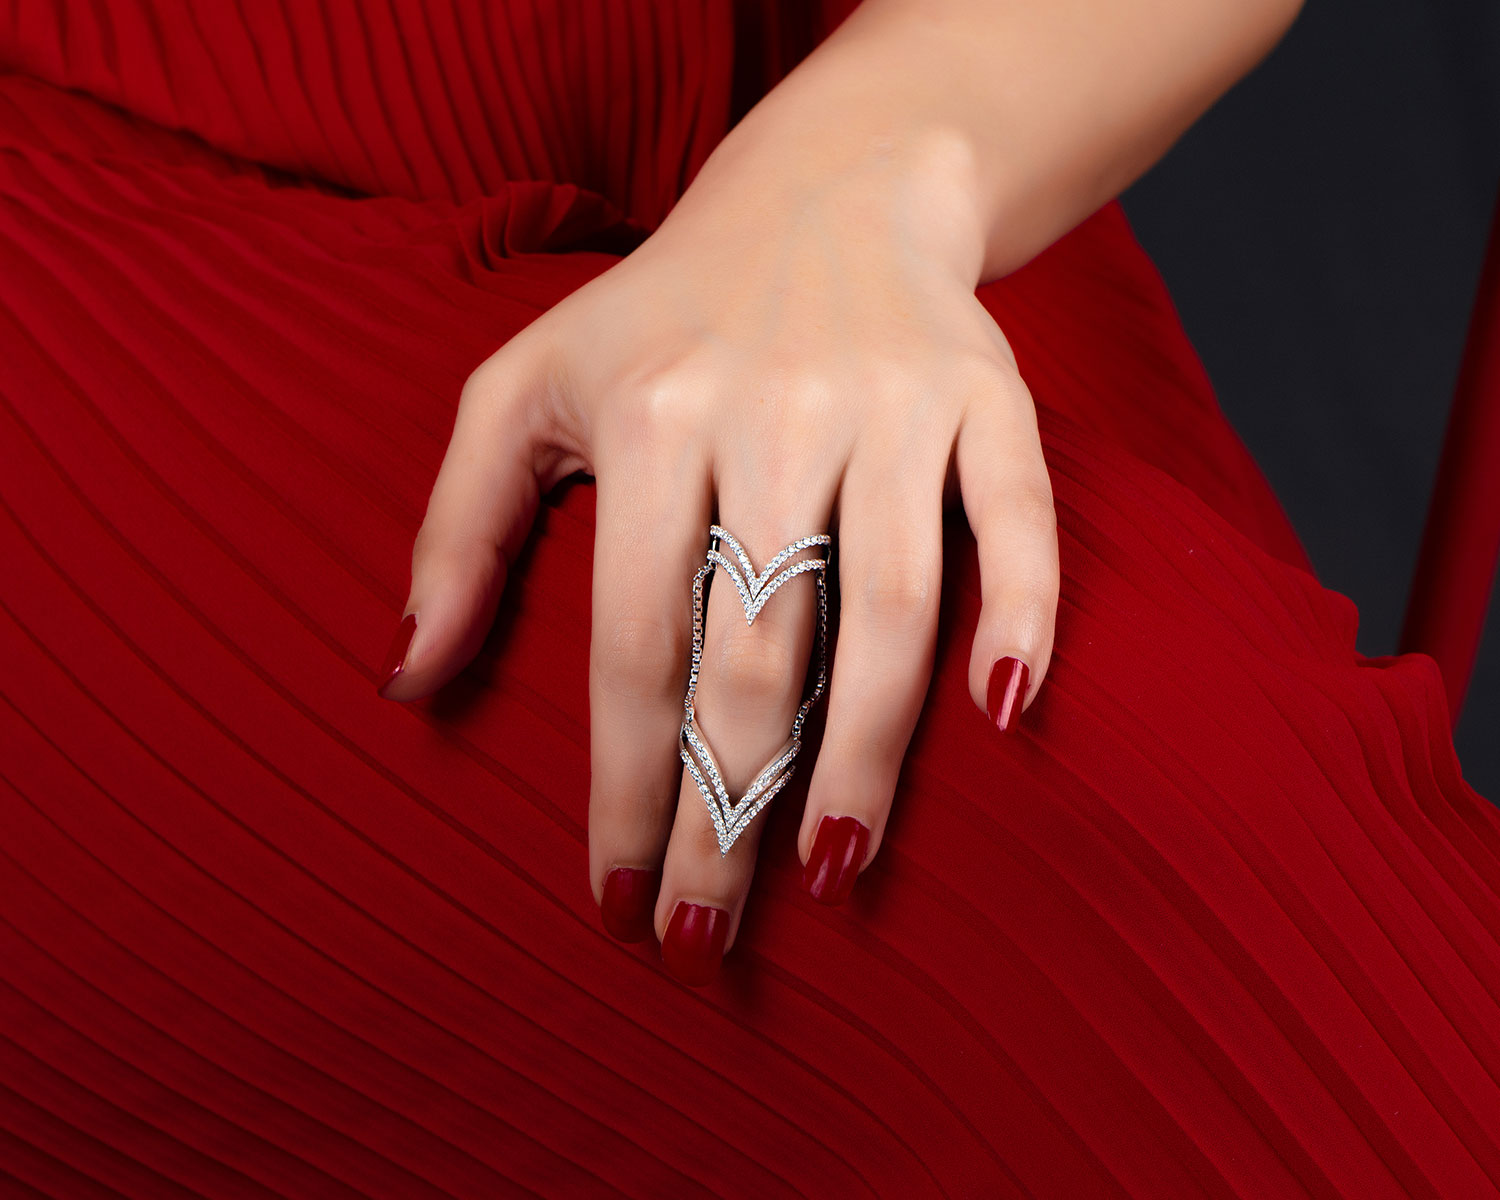 Geometric Ring - Buy Rose Full Finger Gold Ring At Online